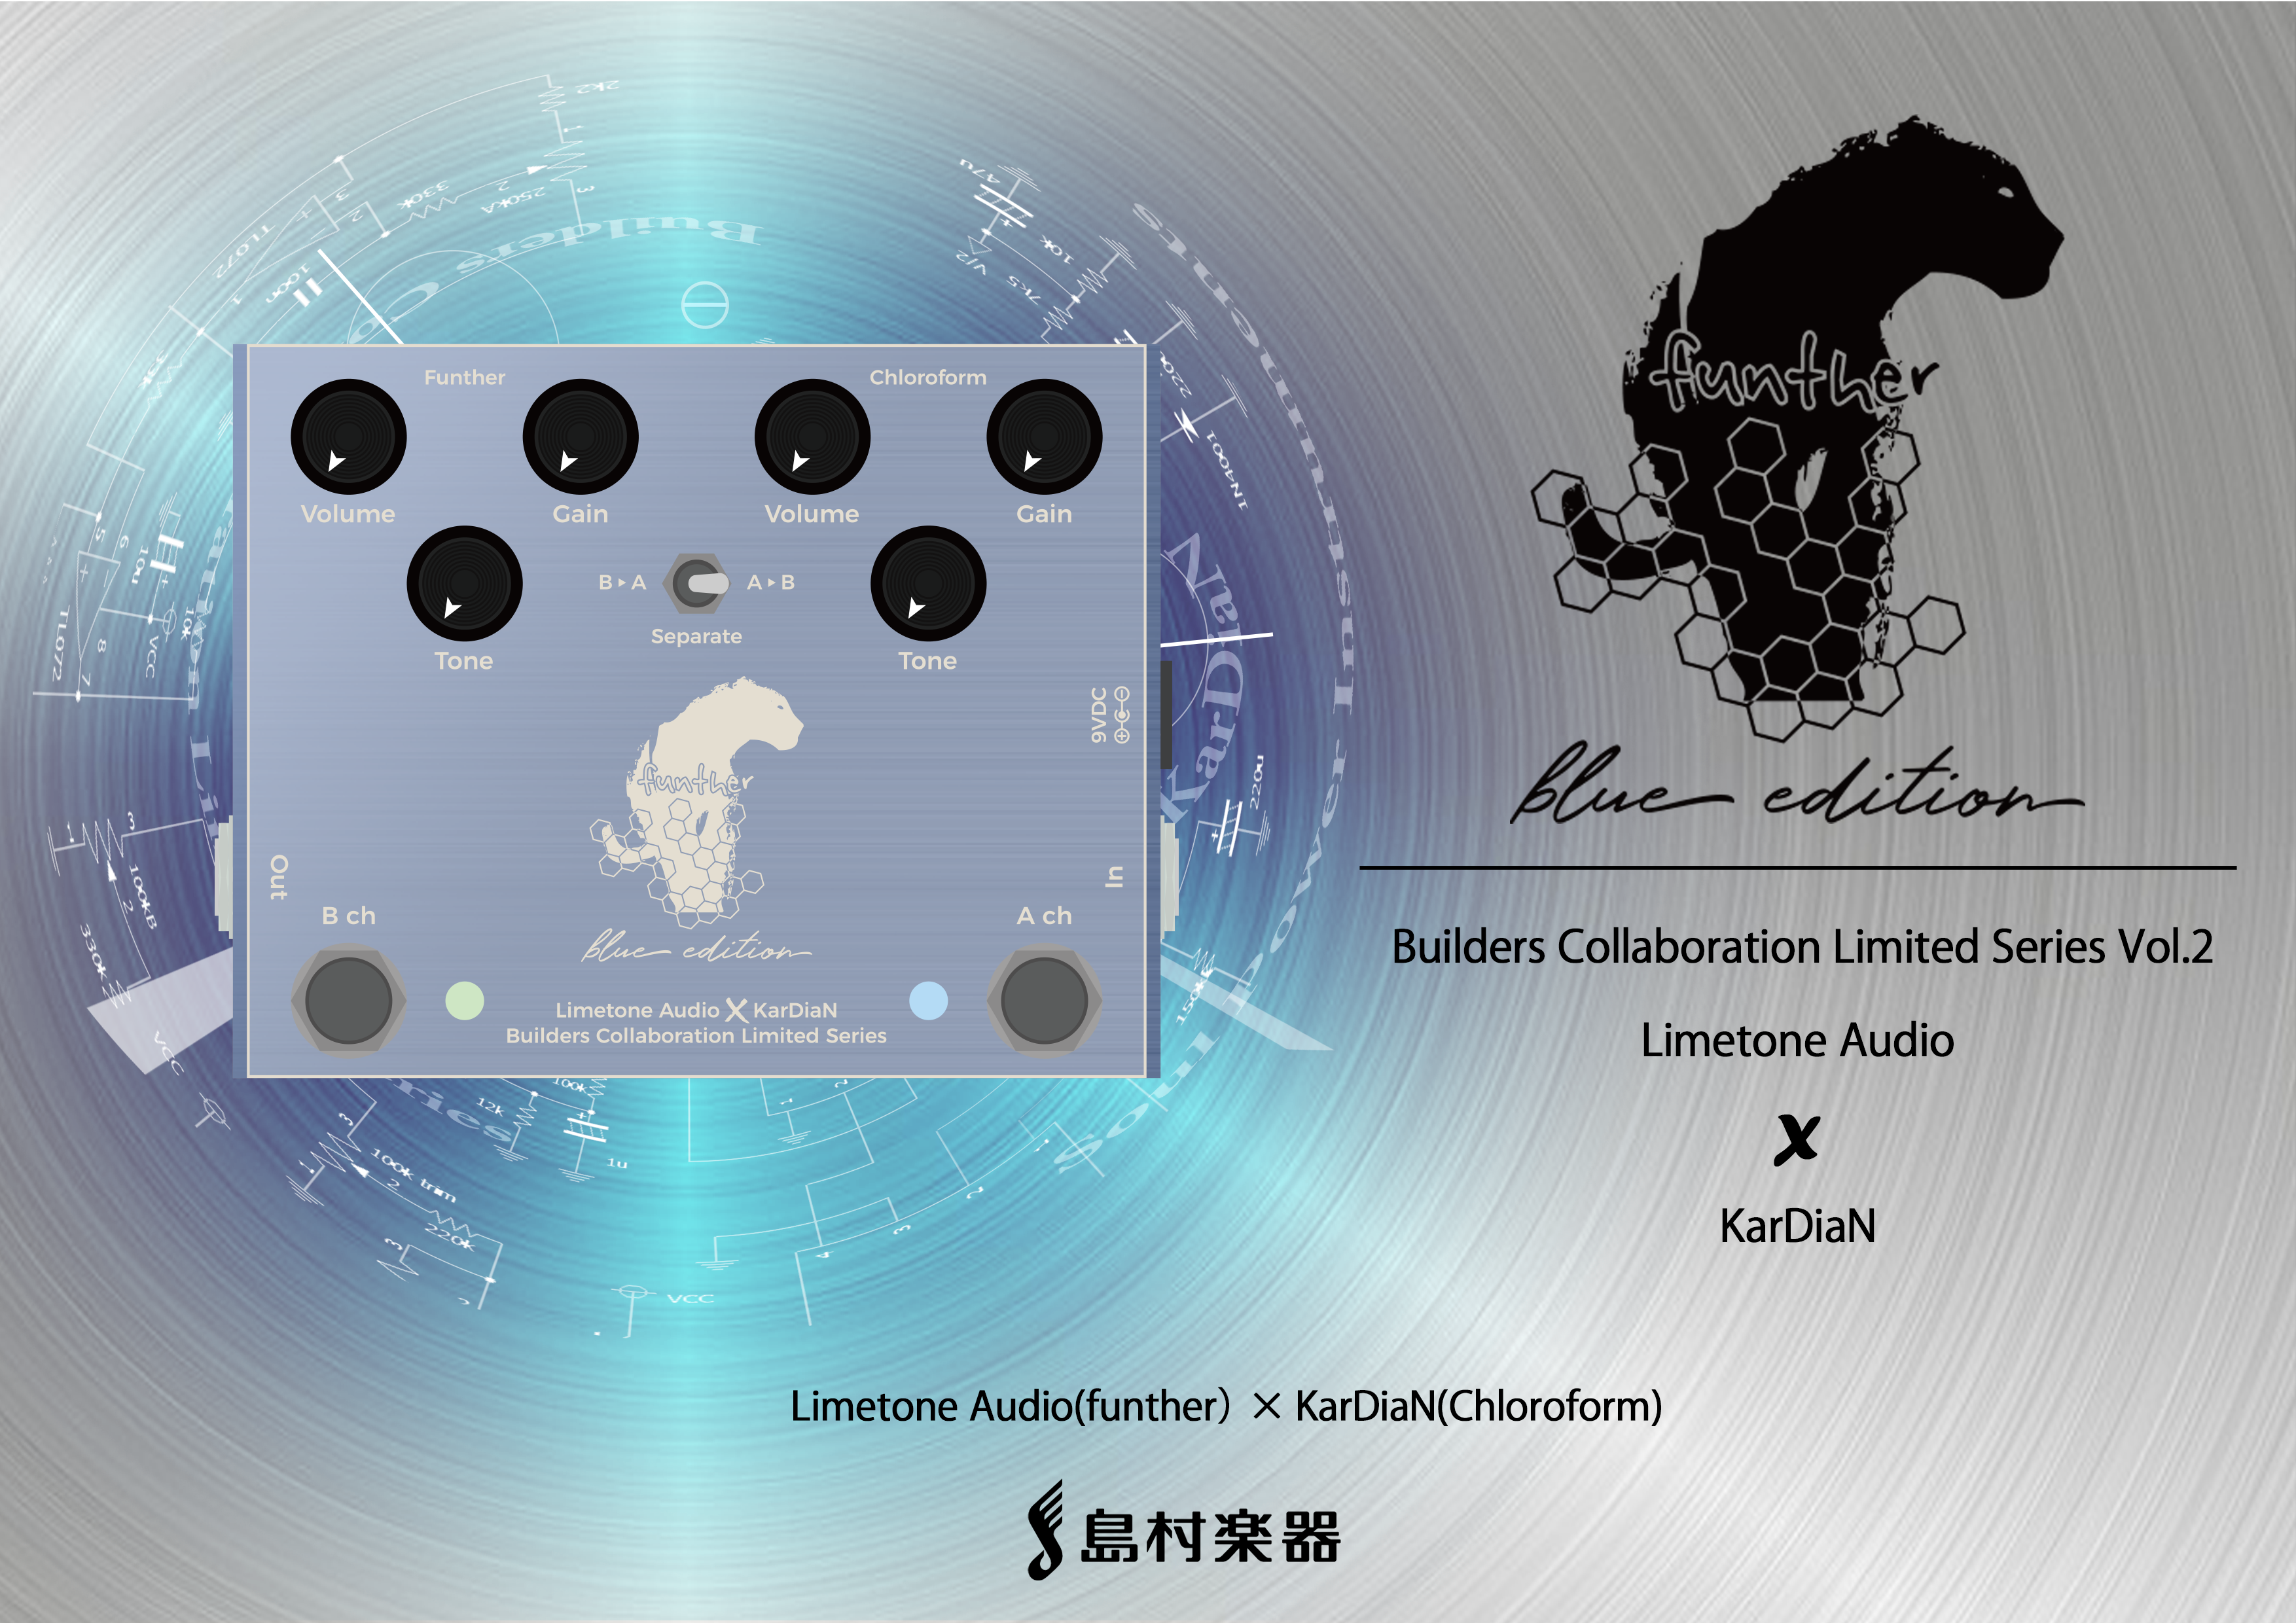 【エフェクタービルダーコラボモデル】第2弾Limetone Audio×KarDiaN  funther “Blue Edition”  2020年3月1日発売！